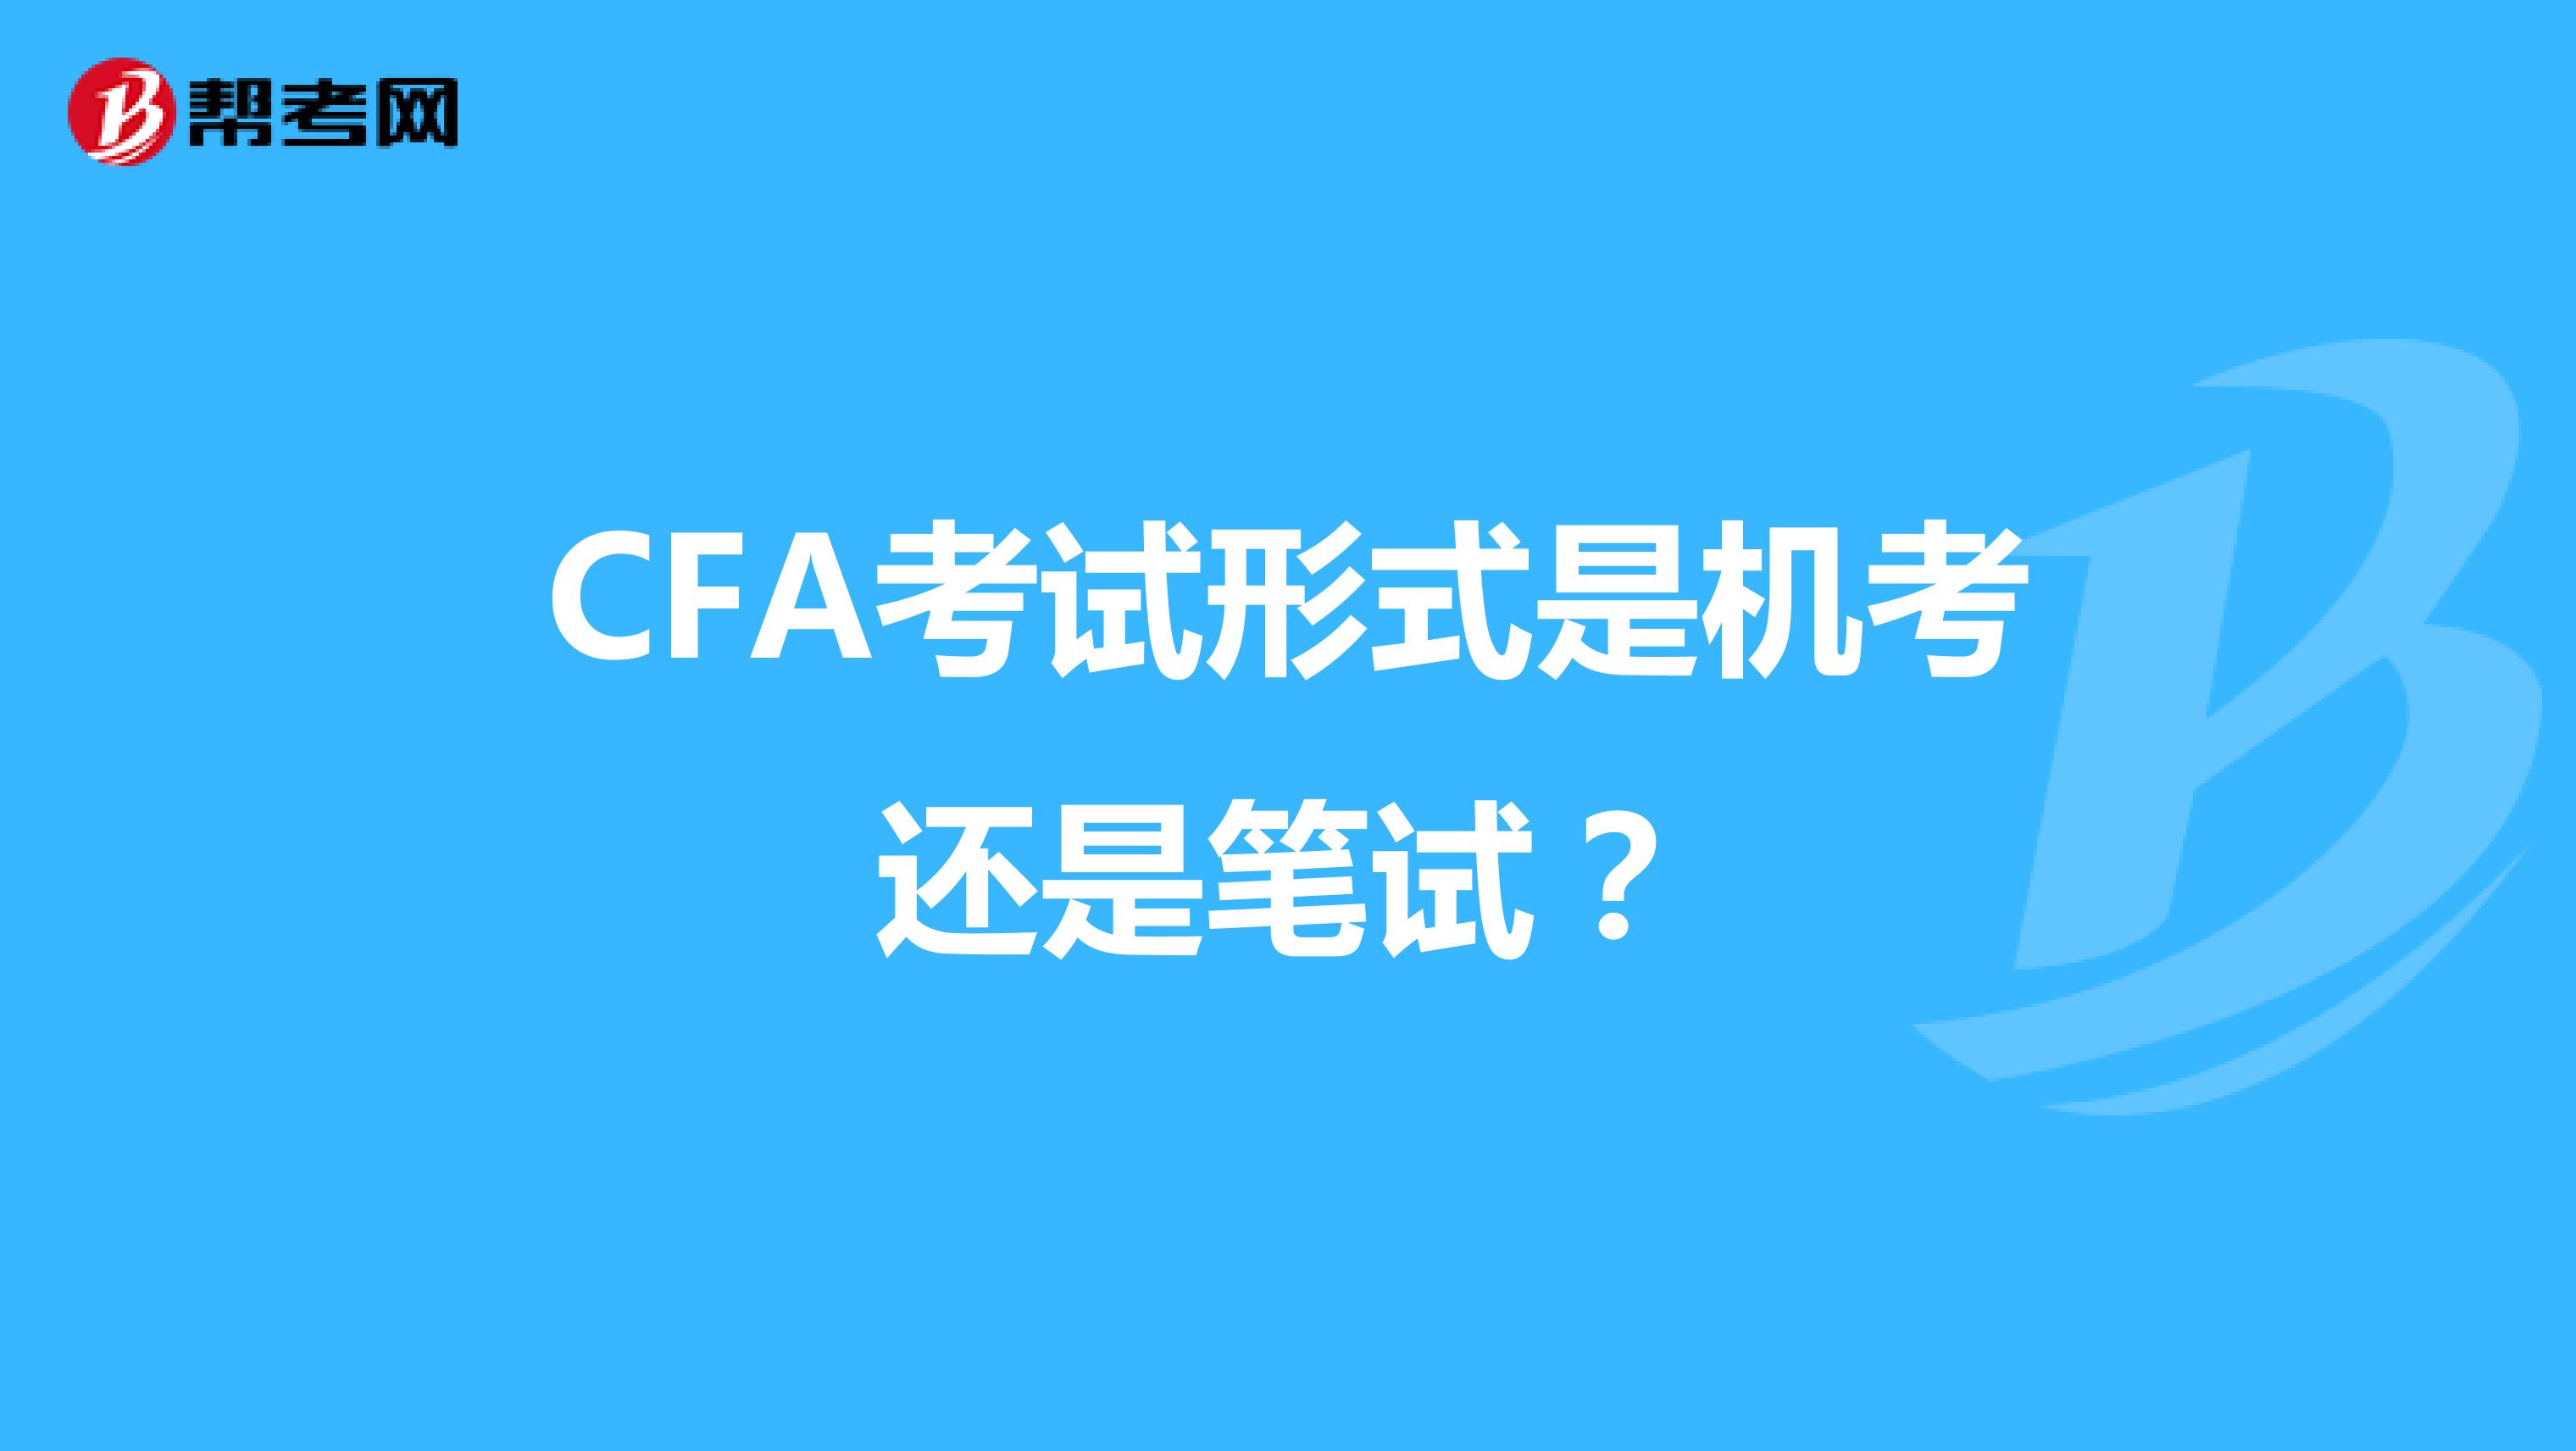 CFA考试形式是机考还是笔试？